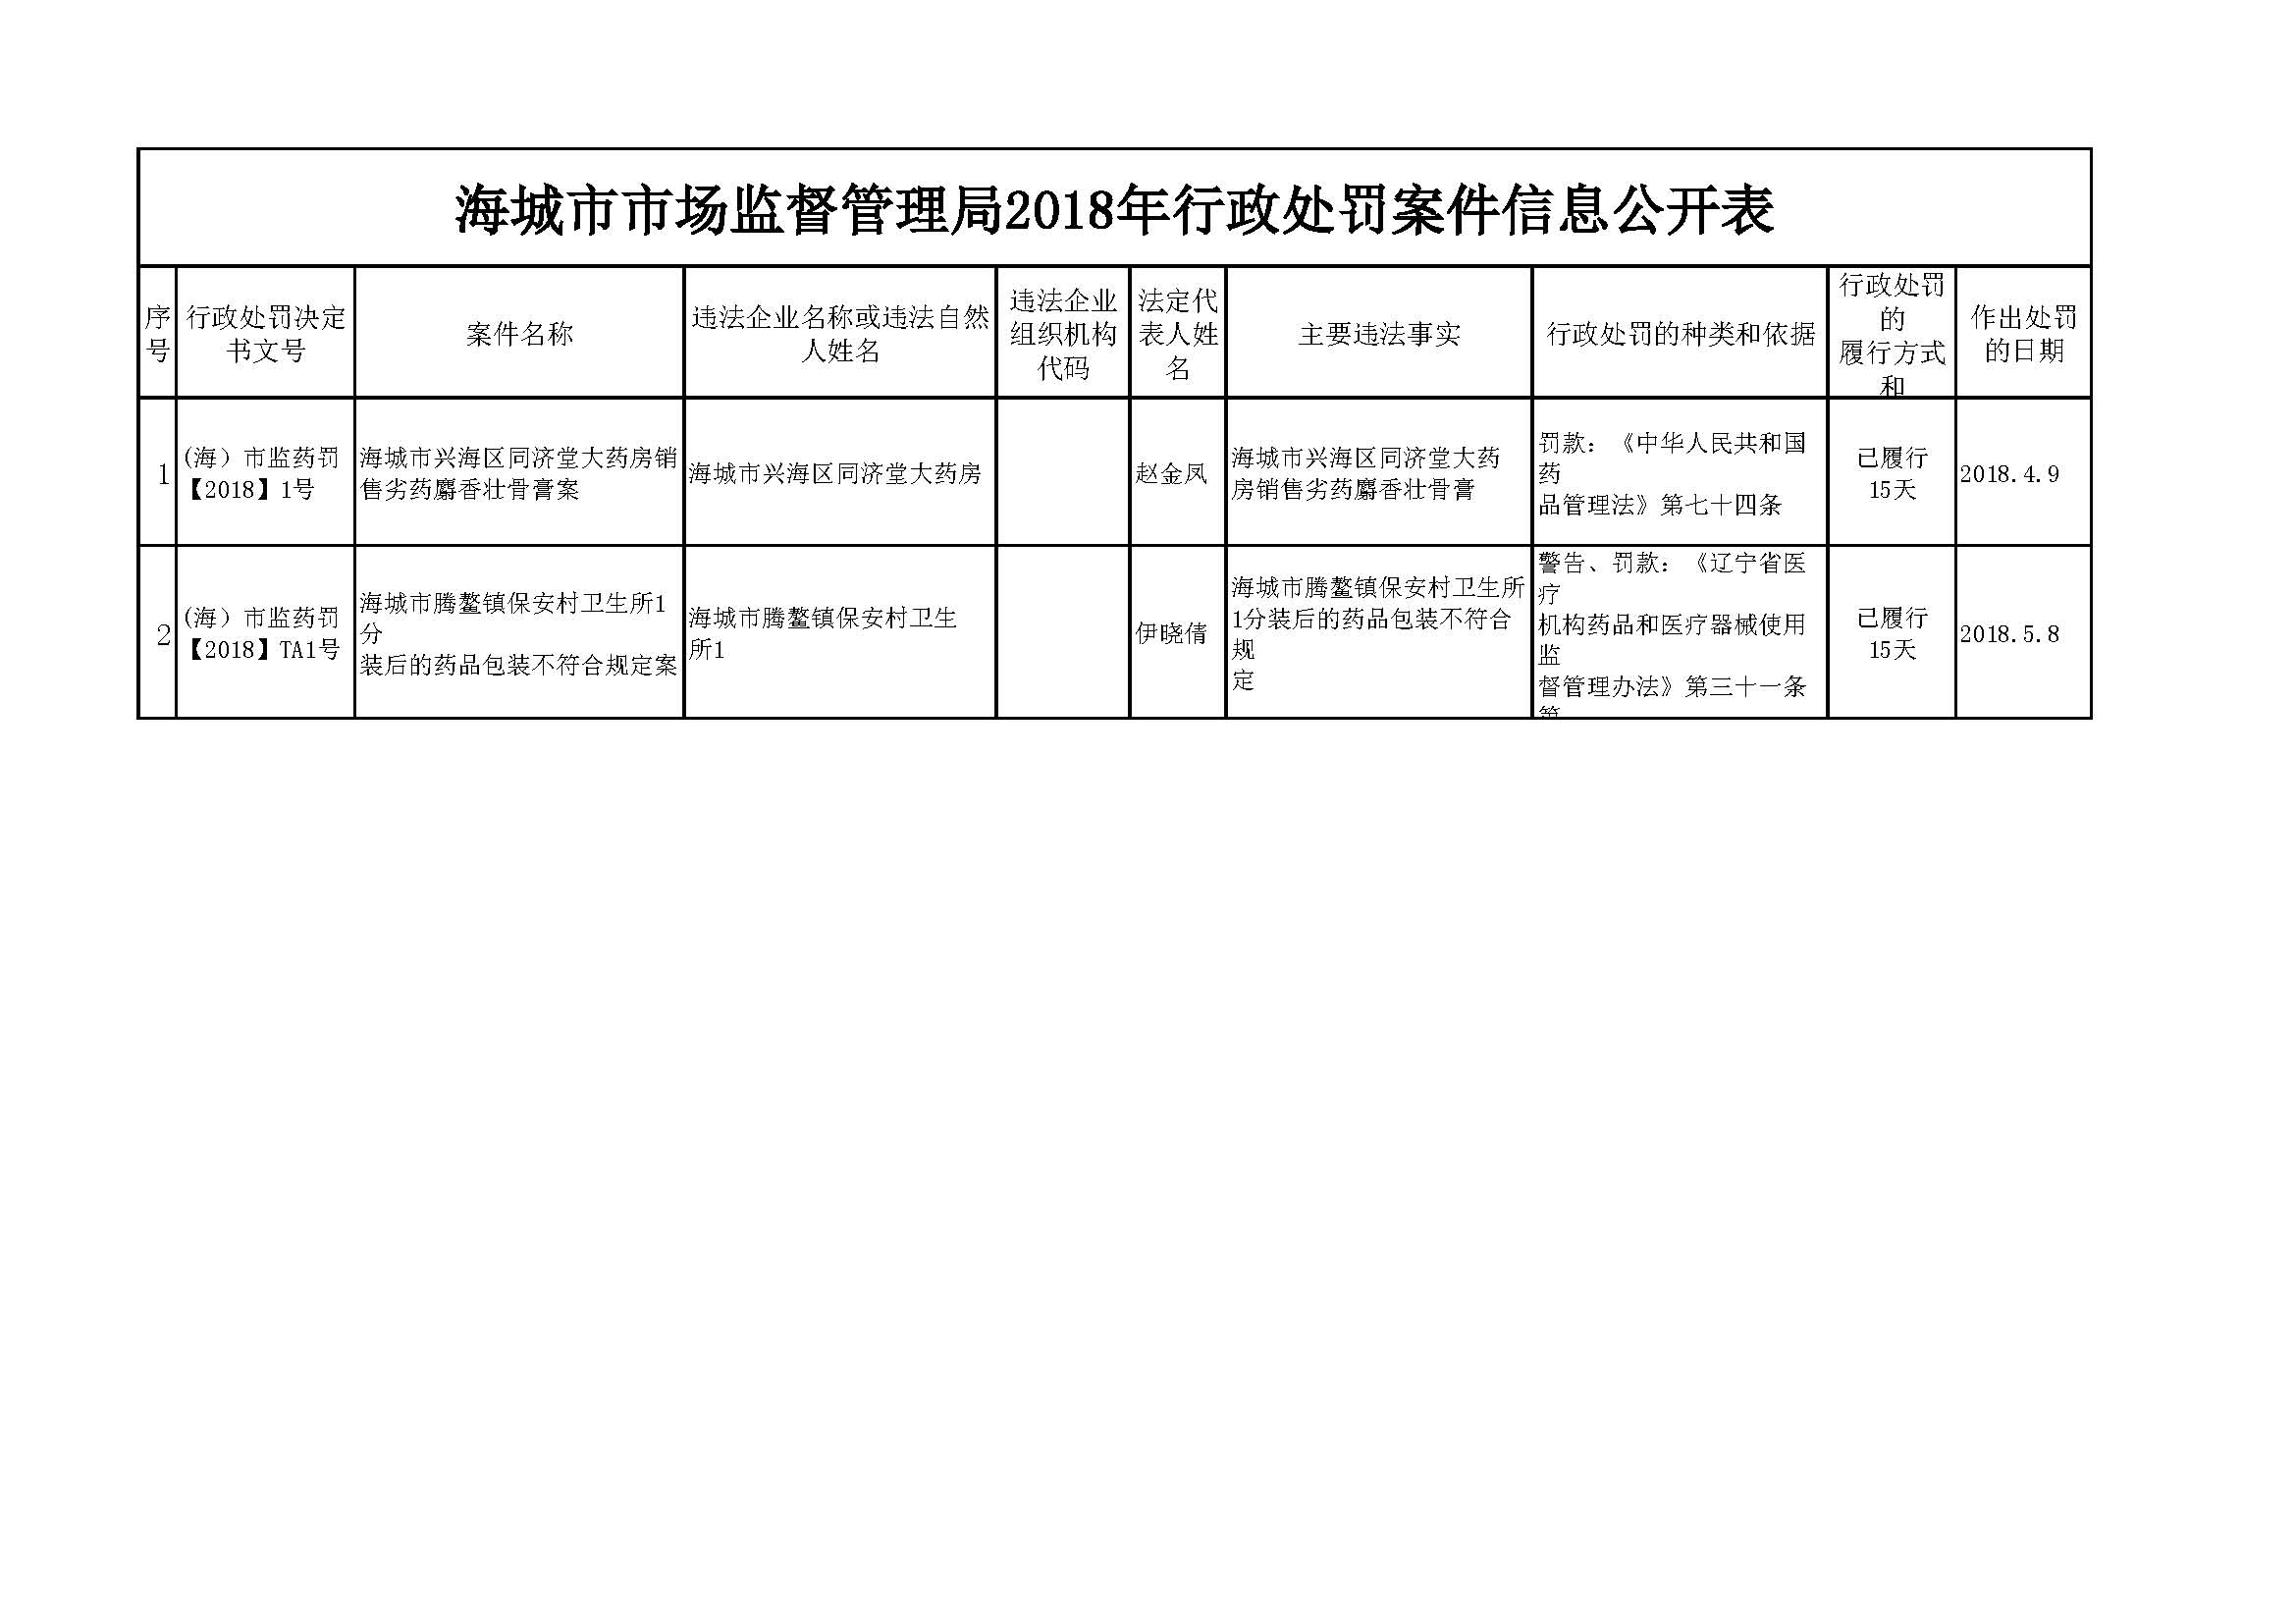 市场监督管理行政处罚程序暂行规定流程图_执法流程_北京市门头沟区人民政府